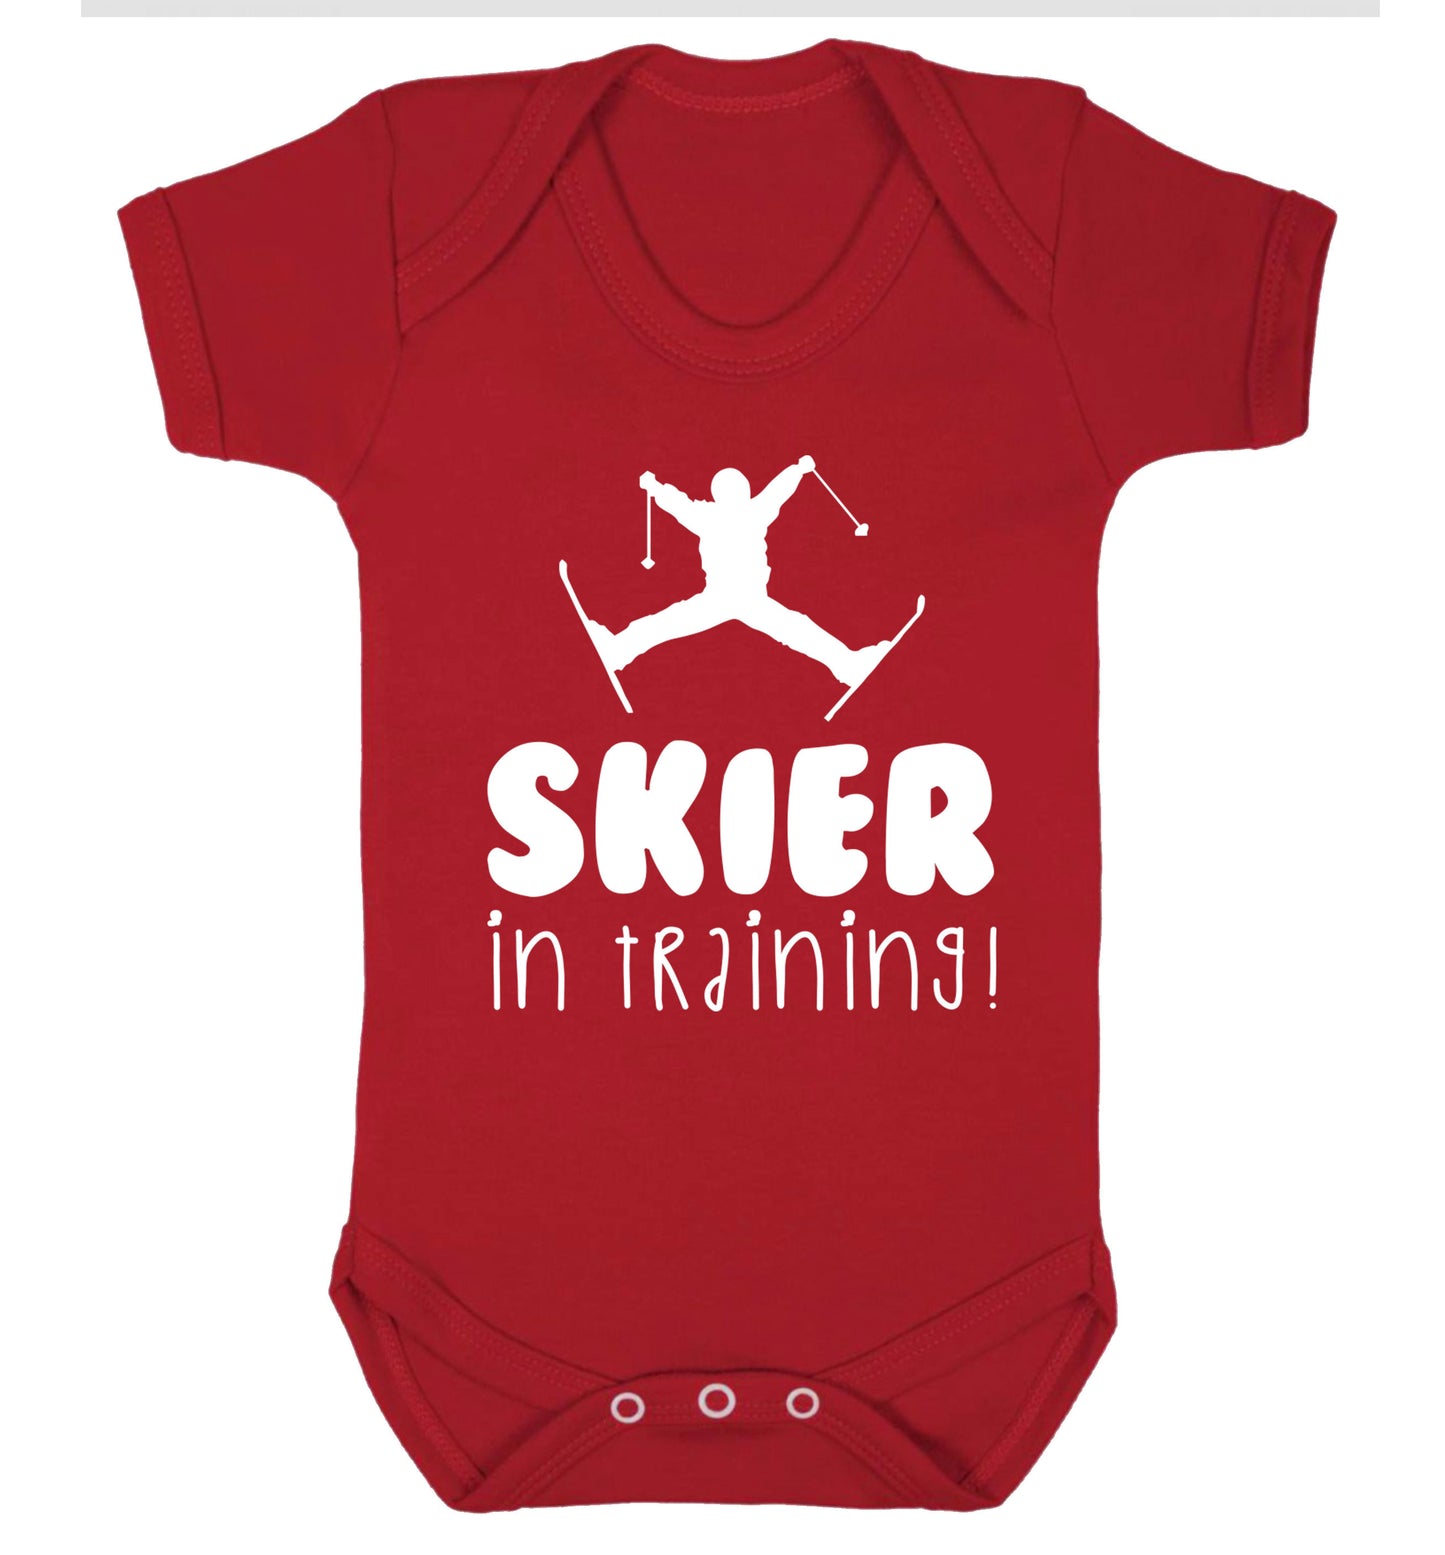 Skier in training Baby Vest red 18-24 months